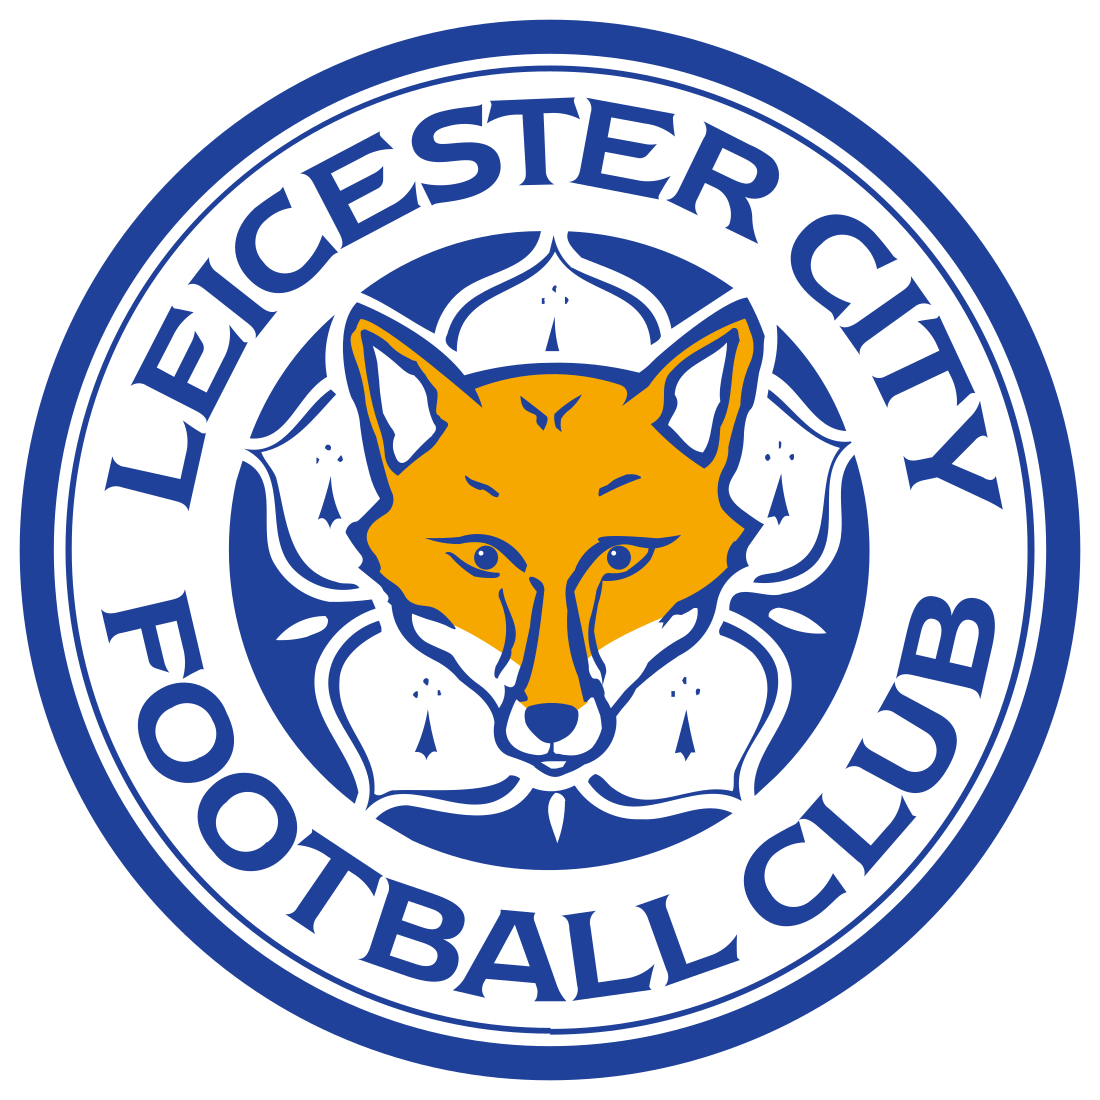 leicester city logo 3 - Leicester City FC Logo